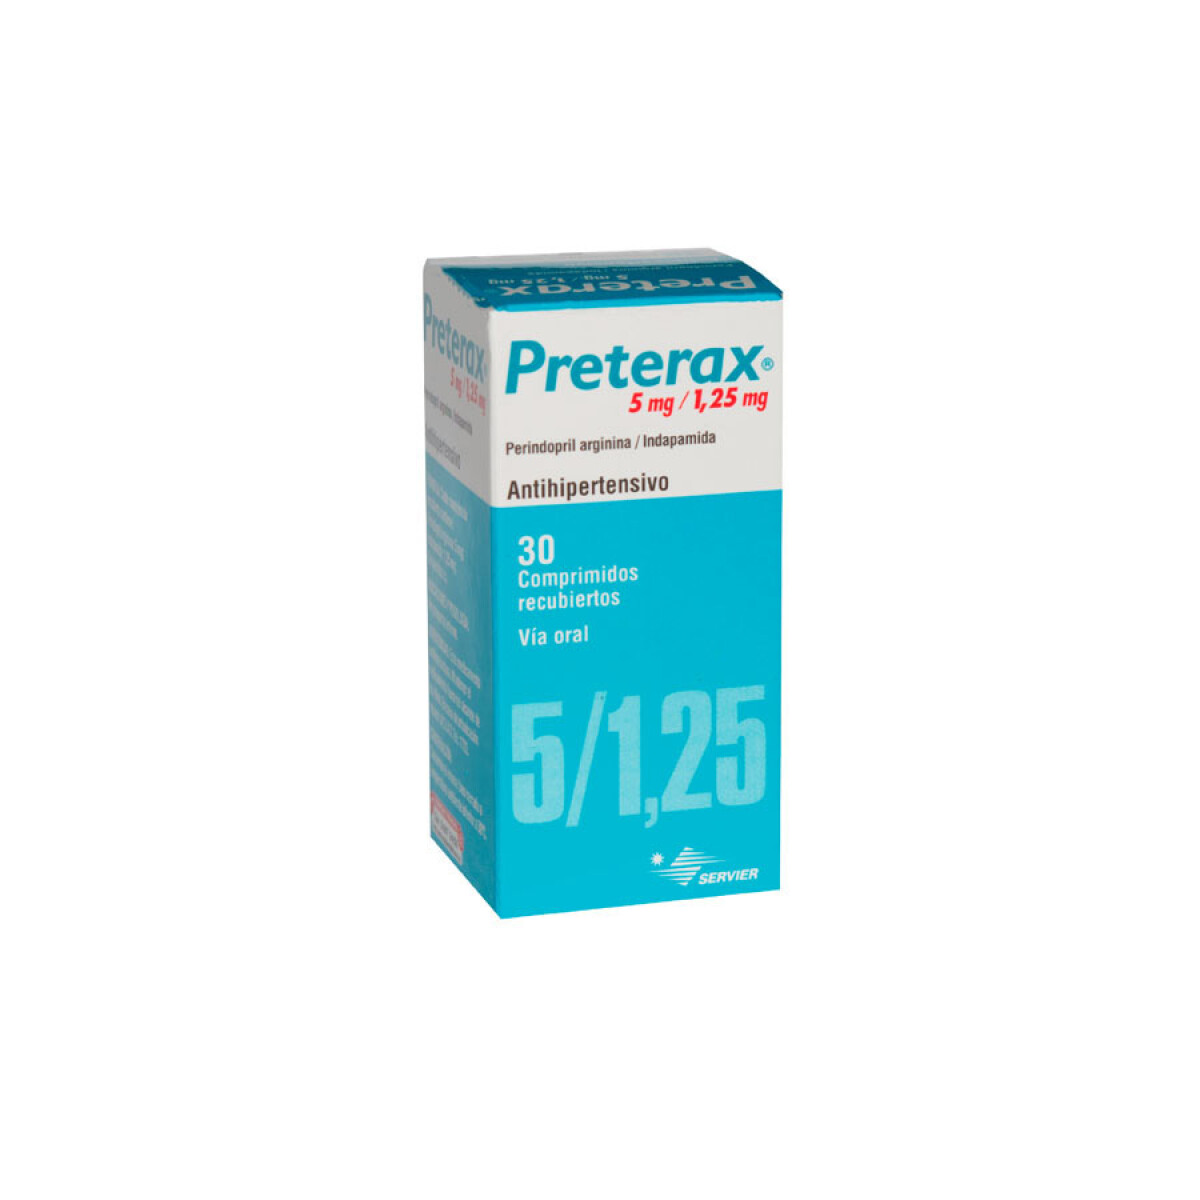 Preterax 5/1.25 